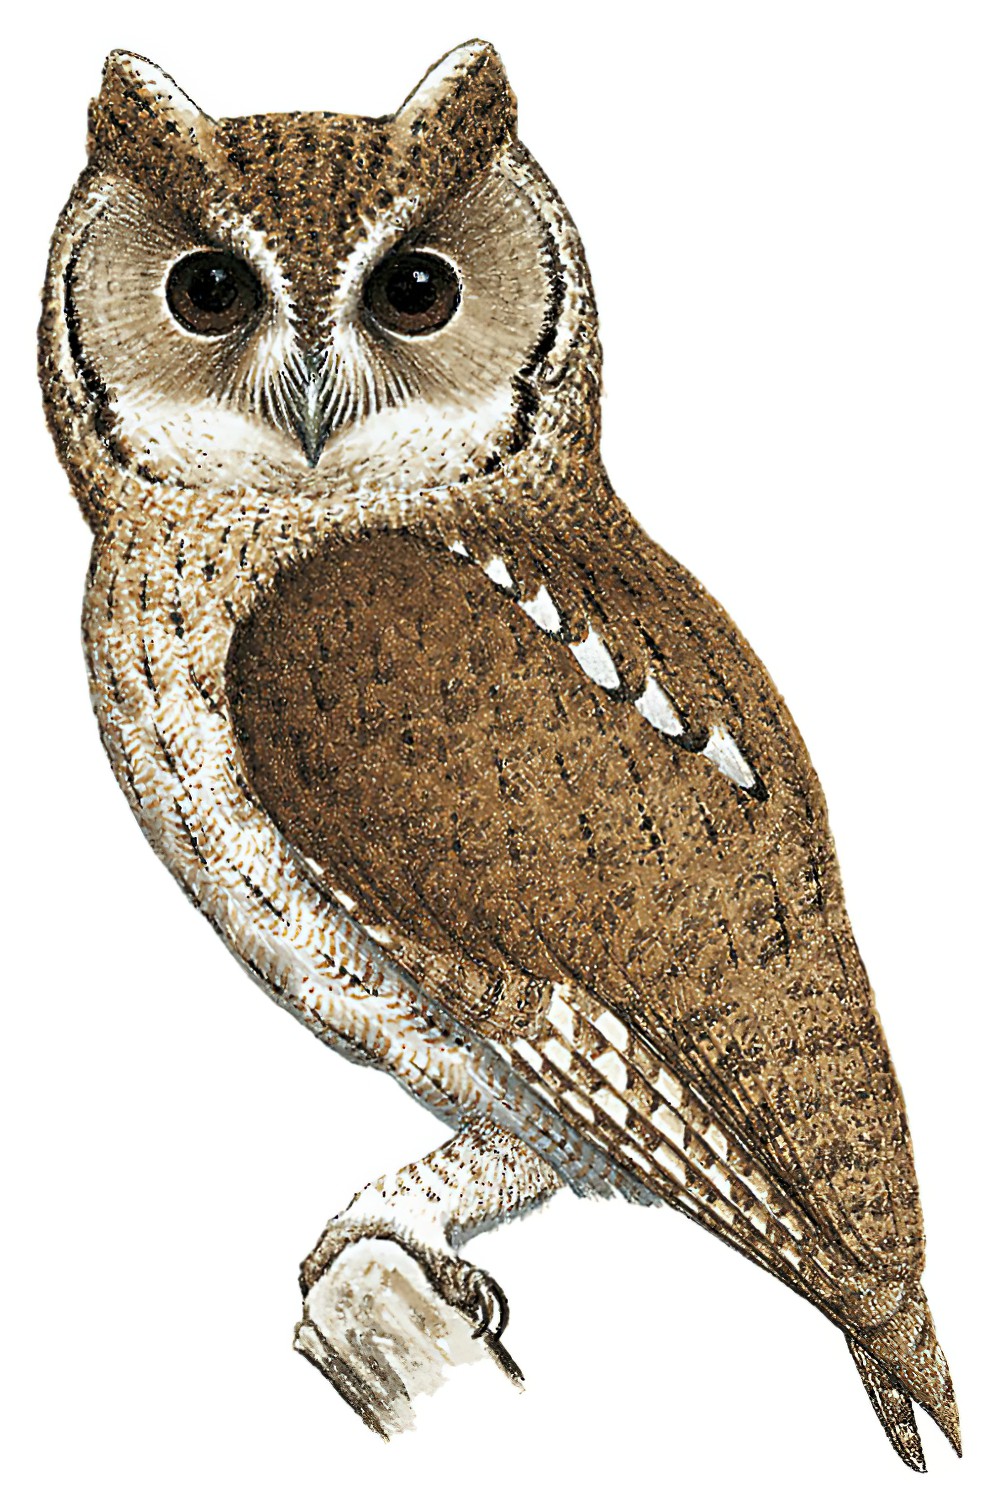 Balsas Screech-Owl / Megascops seductus